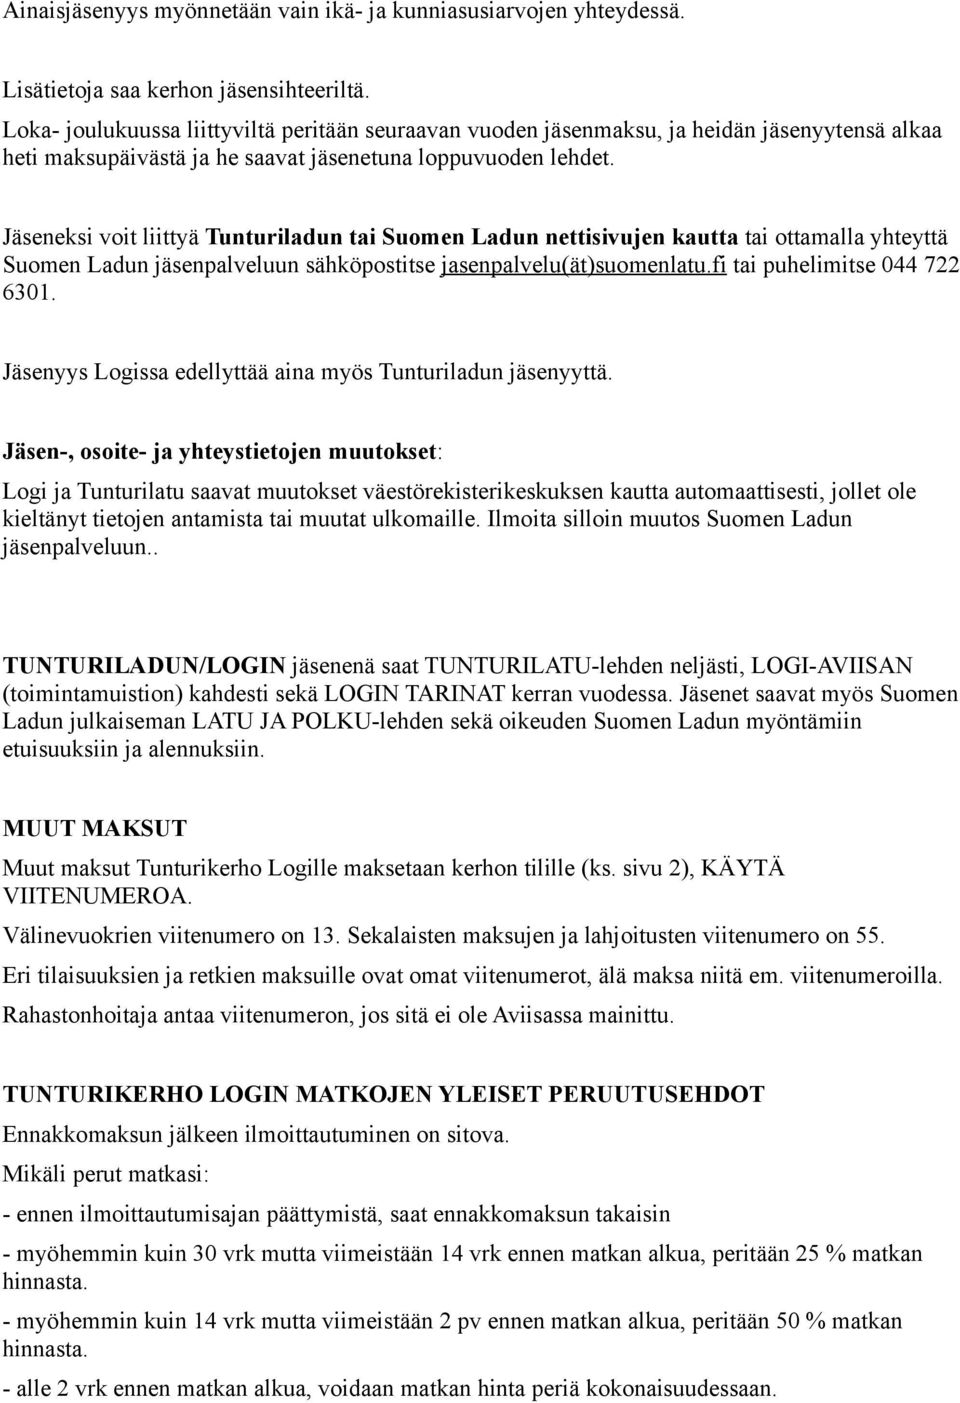 Jäseneksi voit liittyä Tunturiladun tai Suomen Ladun nettisivujen kautta tai ottamalla yhteyttä Suomen Ladun jäsenpalveluun sähköpostitse jasenpalvelu(ät)suomenlatu.fi tai puhelimitse 044 722 6301.